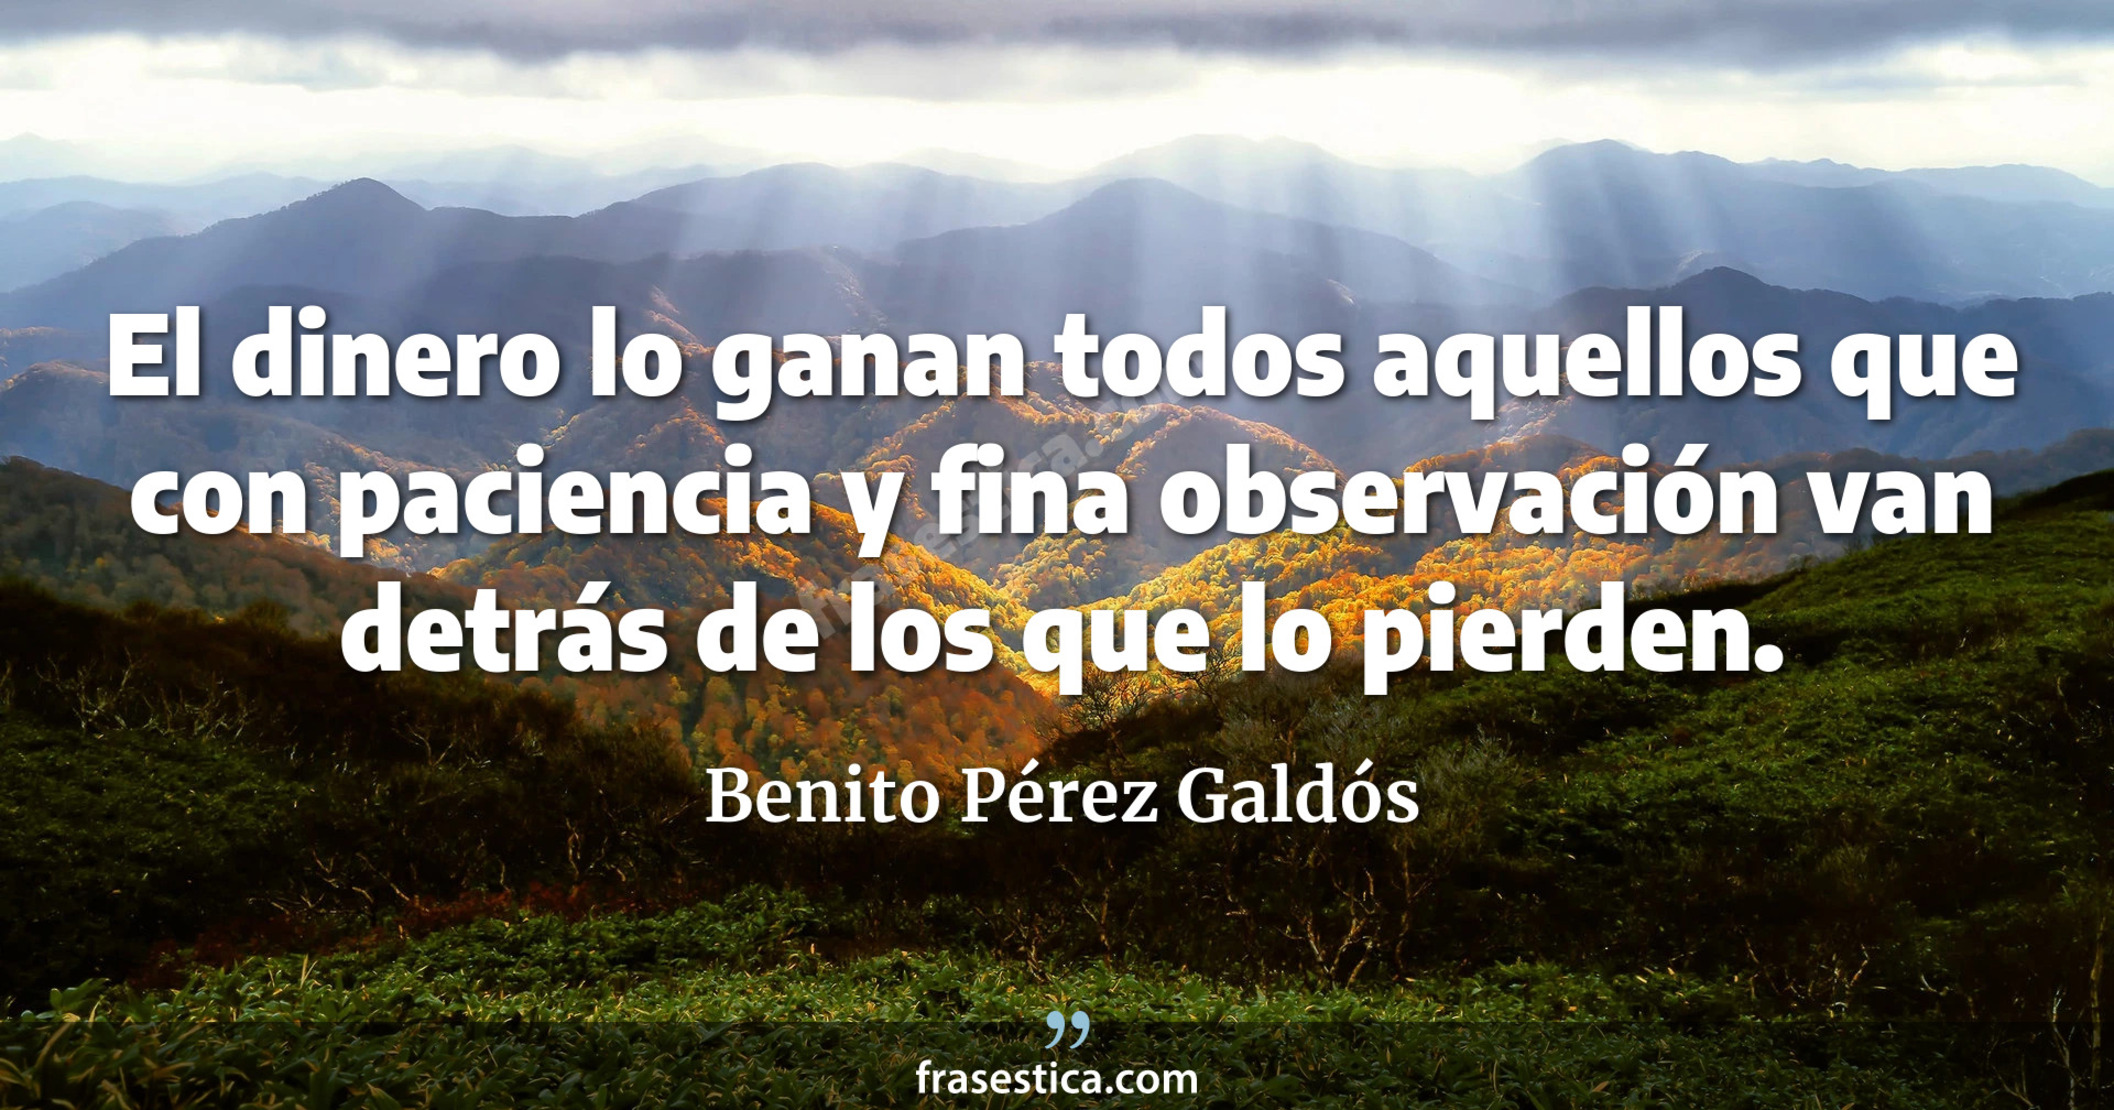 El dinero lo ganan todos aquellos que con paciencia y fina observación van detrás de los que lo pierden. - Benito Pérez Galdós